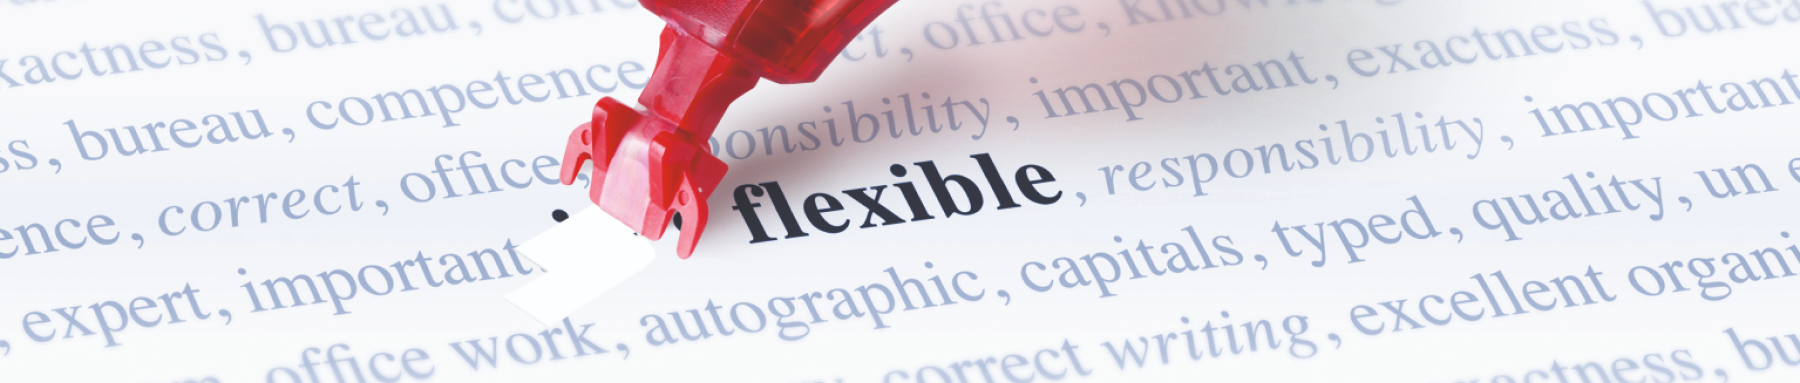 Ein roter Pfeil trifft genau das Ziel auf dem Wort „flexibel“, vor dem Hintergrund anderer Wörter, die sich auf Kompetenz und Arbeitsethik beziehen, und symbolisiert den direkten Treffer einer gewünschten Fähigkeit oder Qualität.